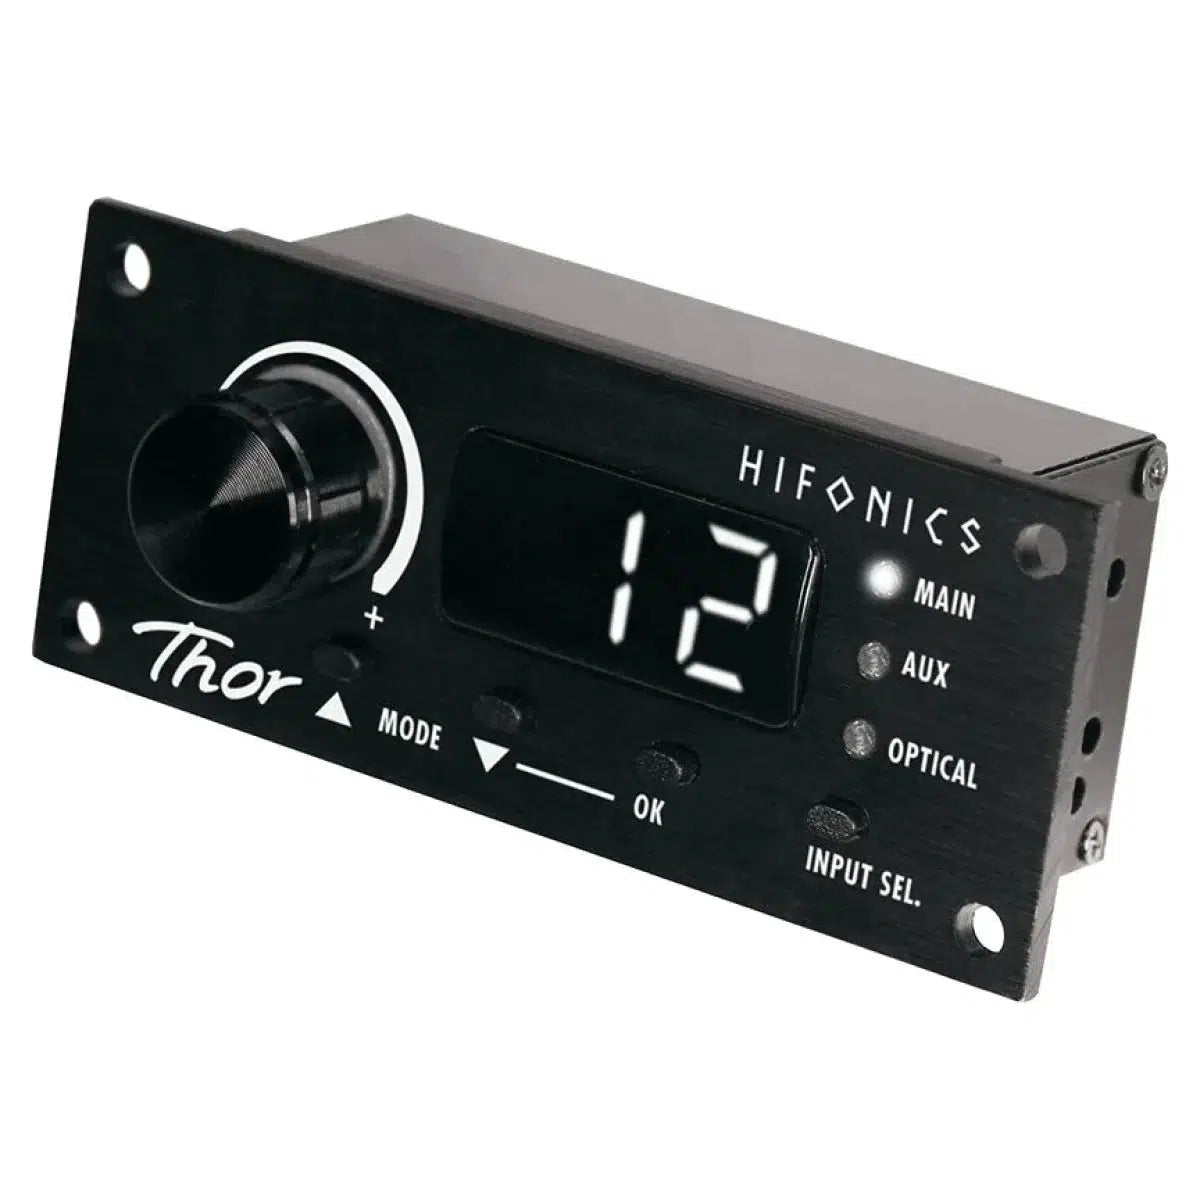 Hifonics-Thor TRX-4004DSP-Amplificador DSP de 4 canales-Masori.de